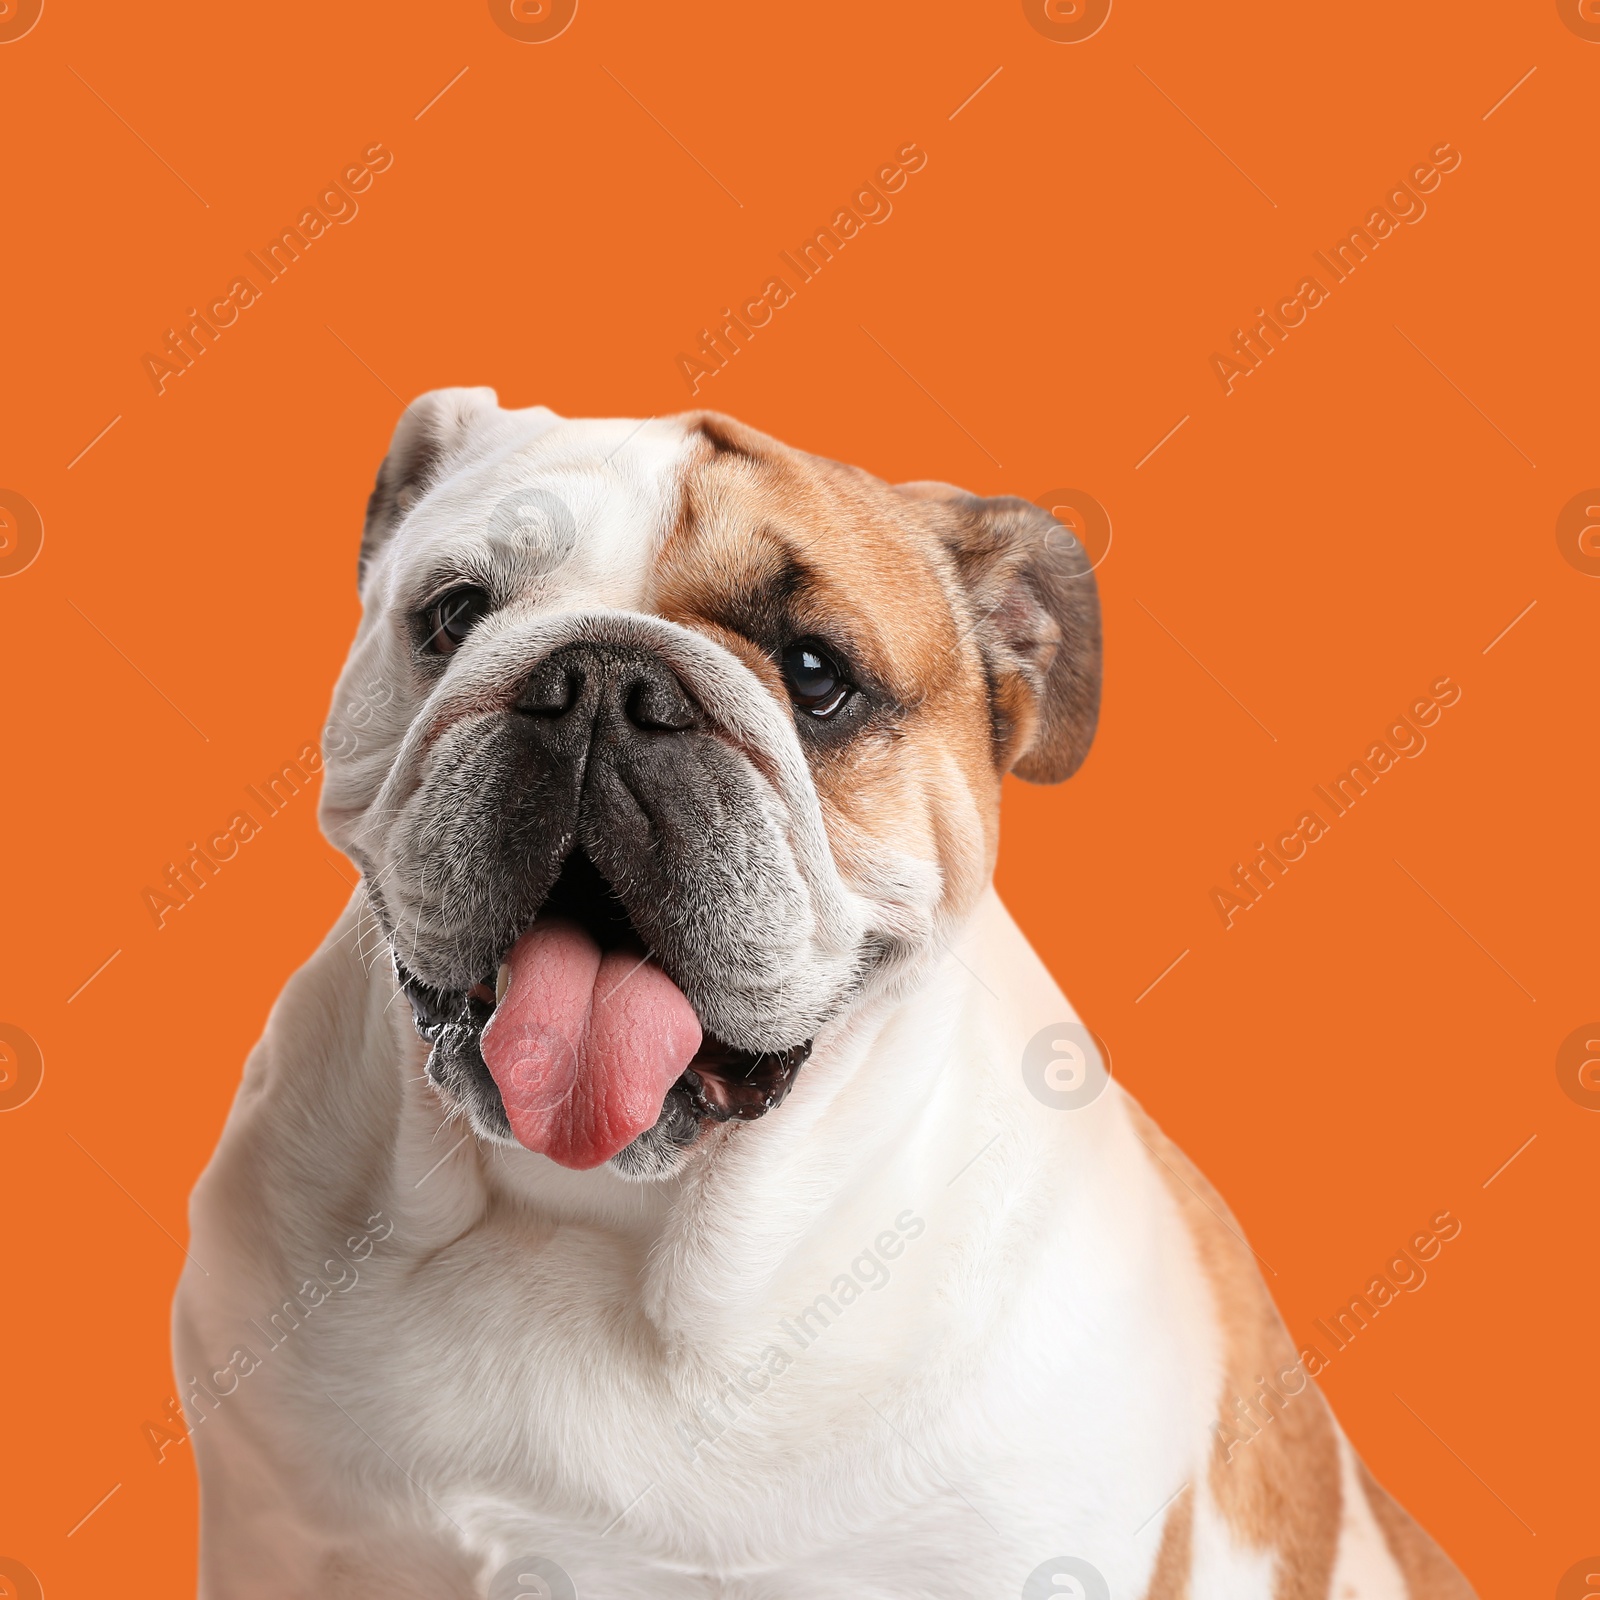 Image of Cute English bulldog on orange background. Adorable pet